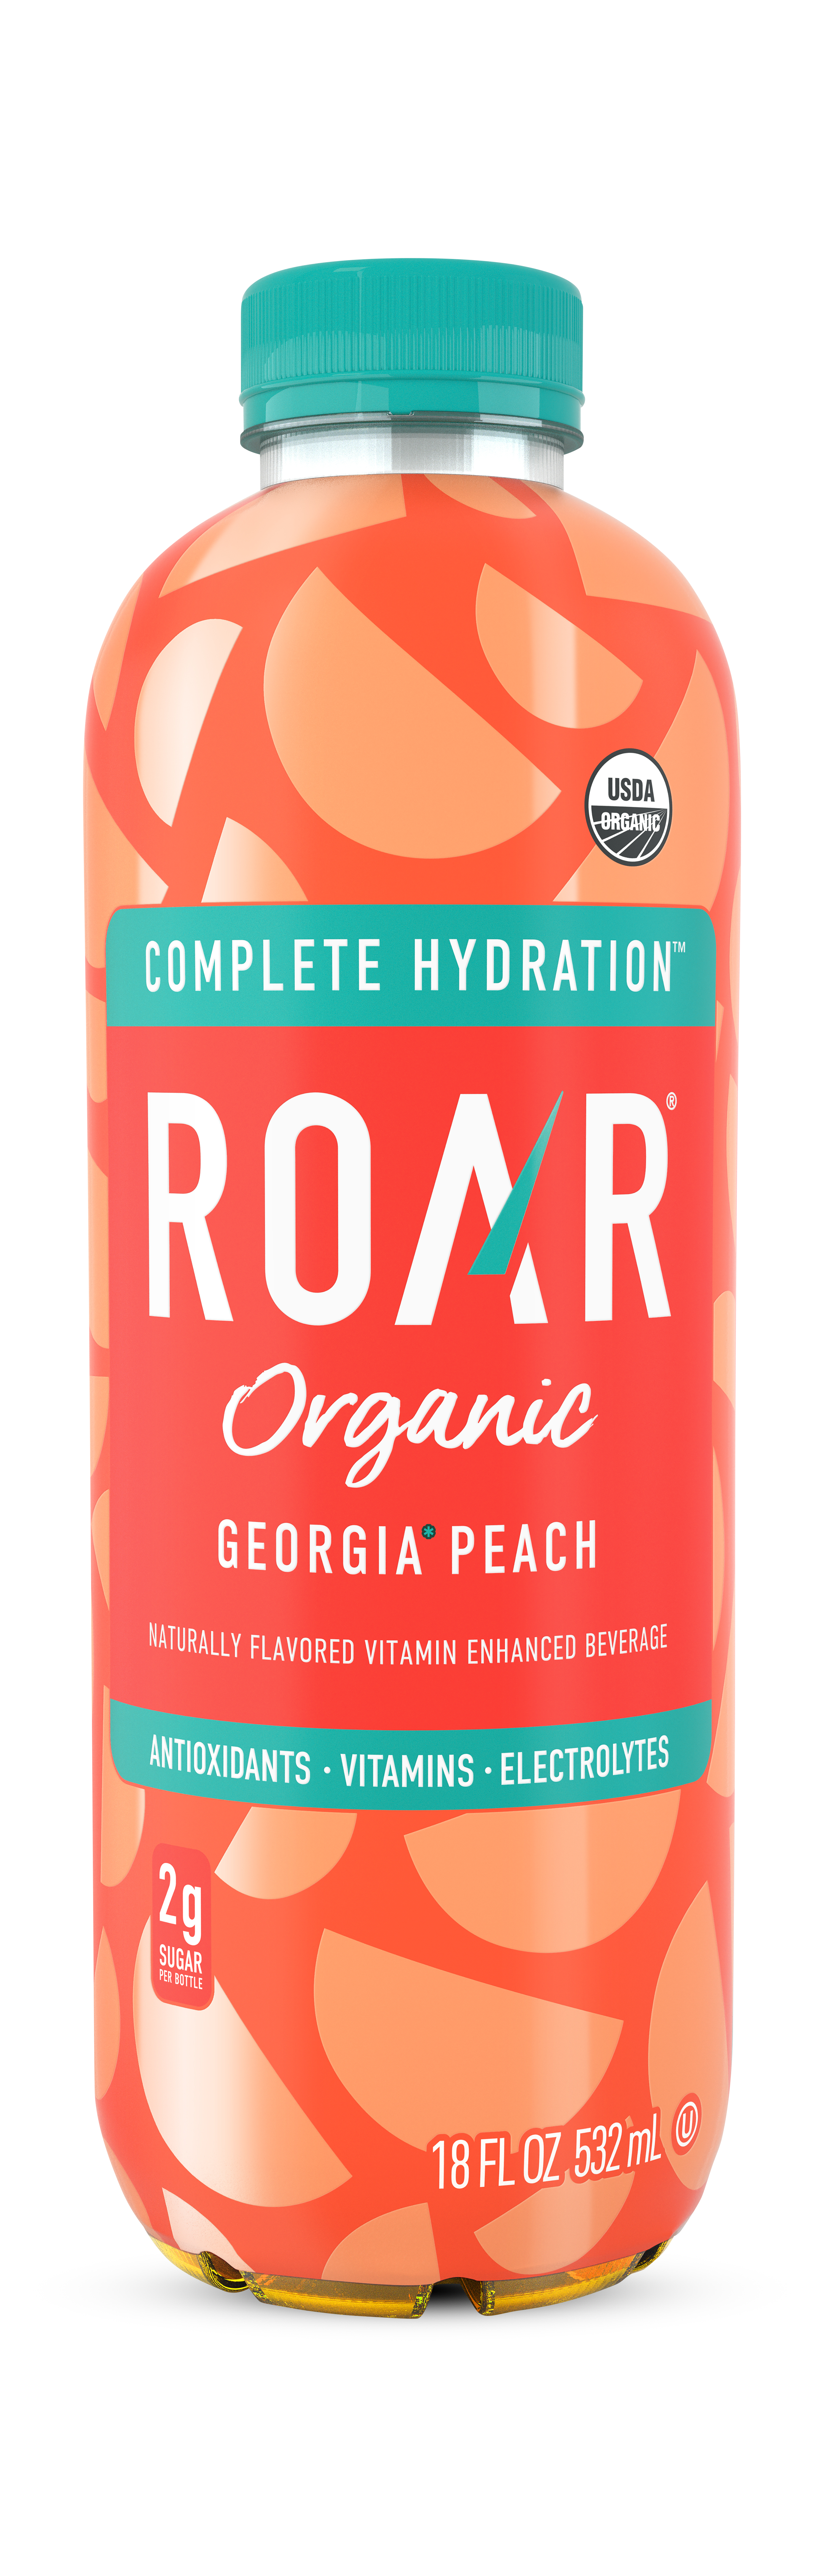 Roar Organic Georgia Peach 1 units per case 18.0 oz